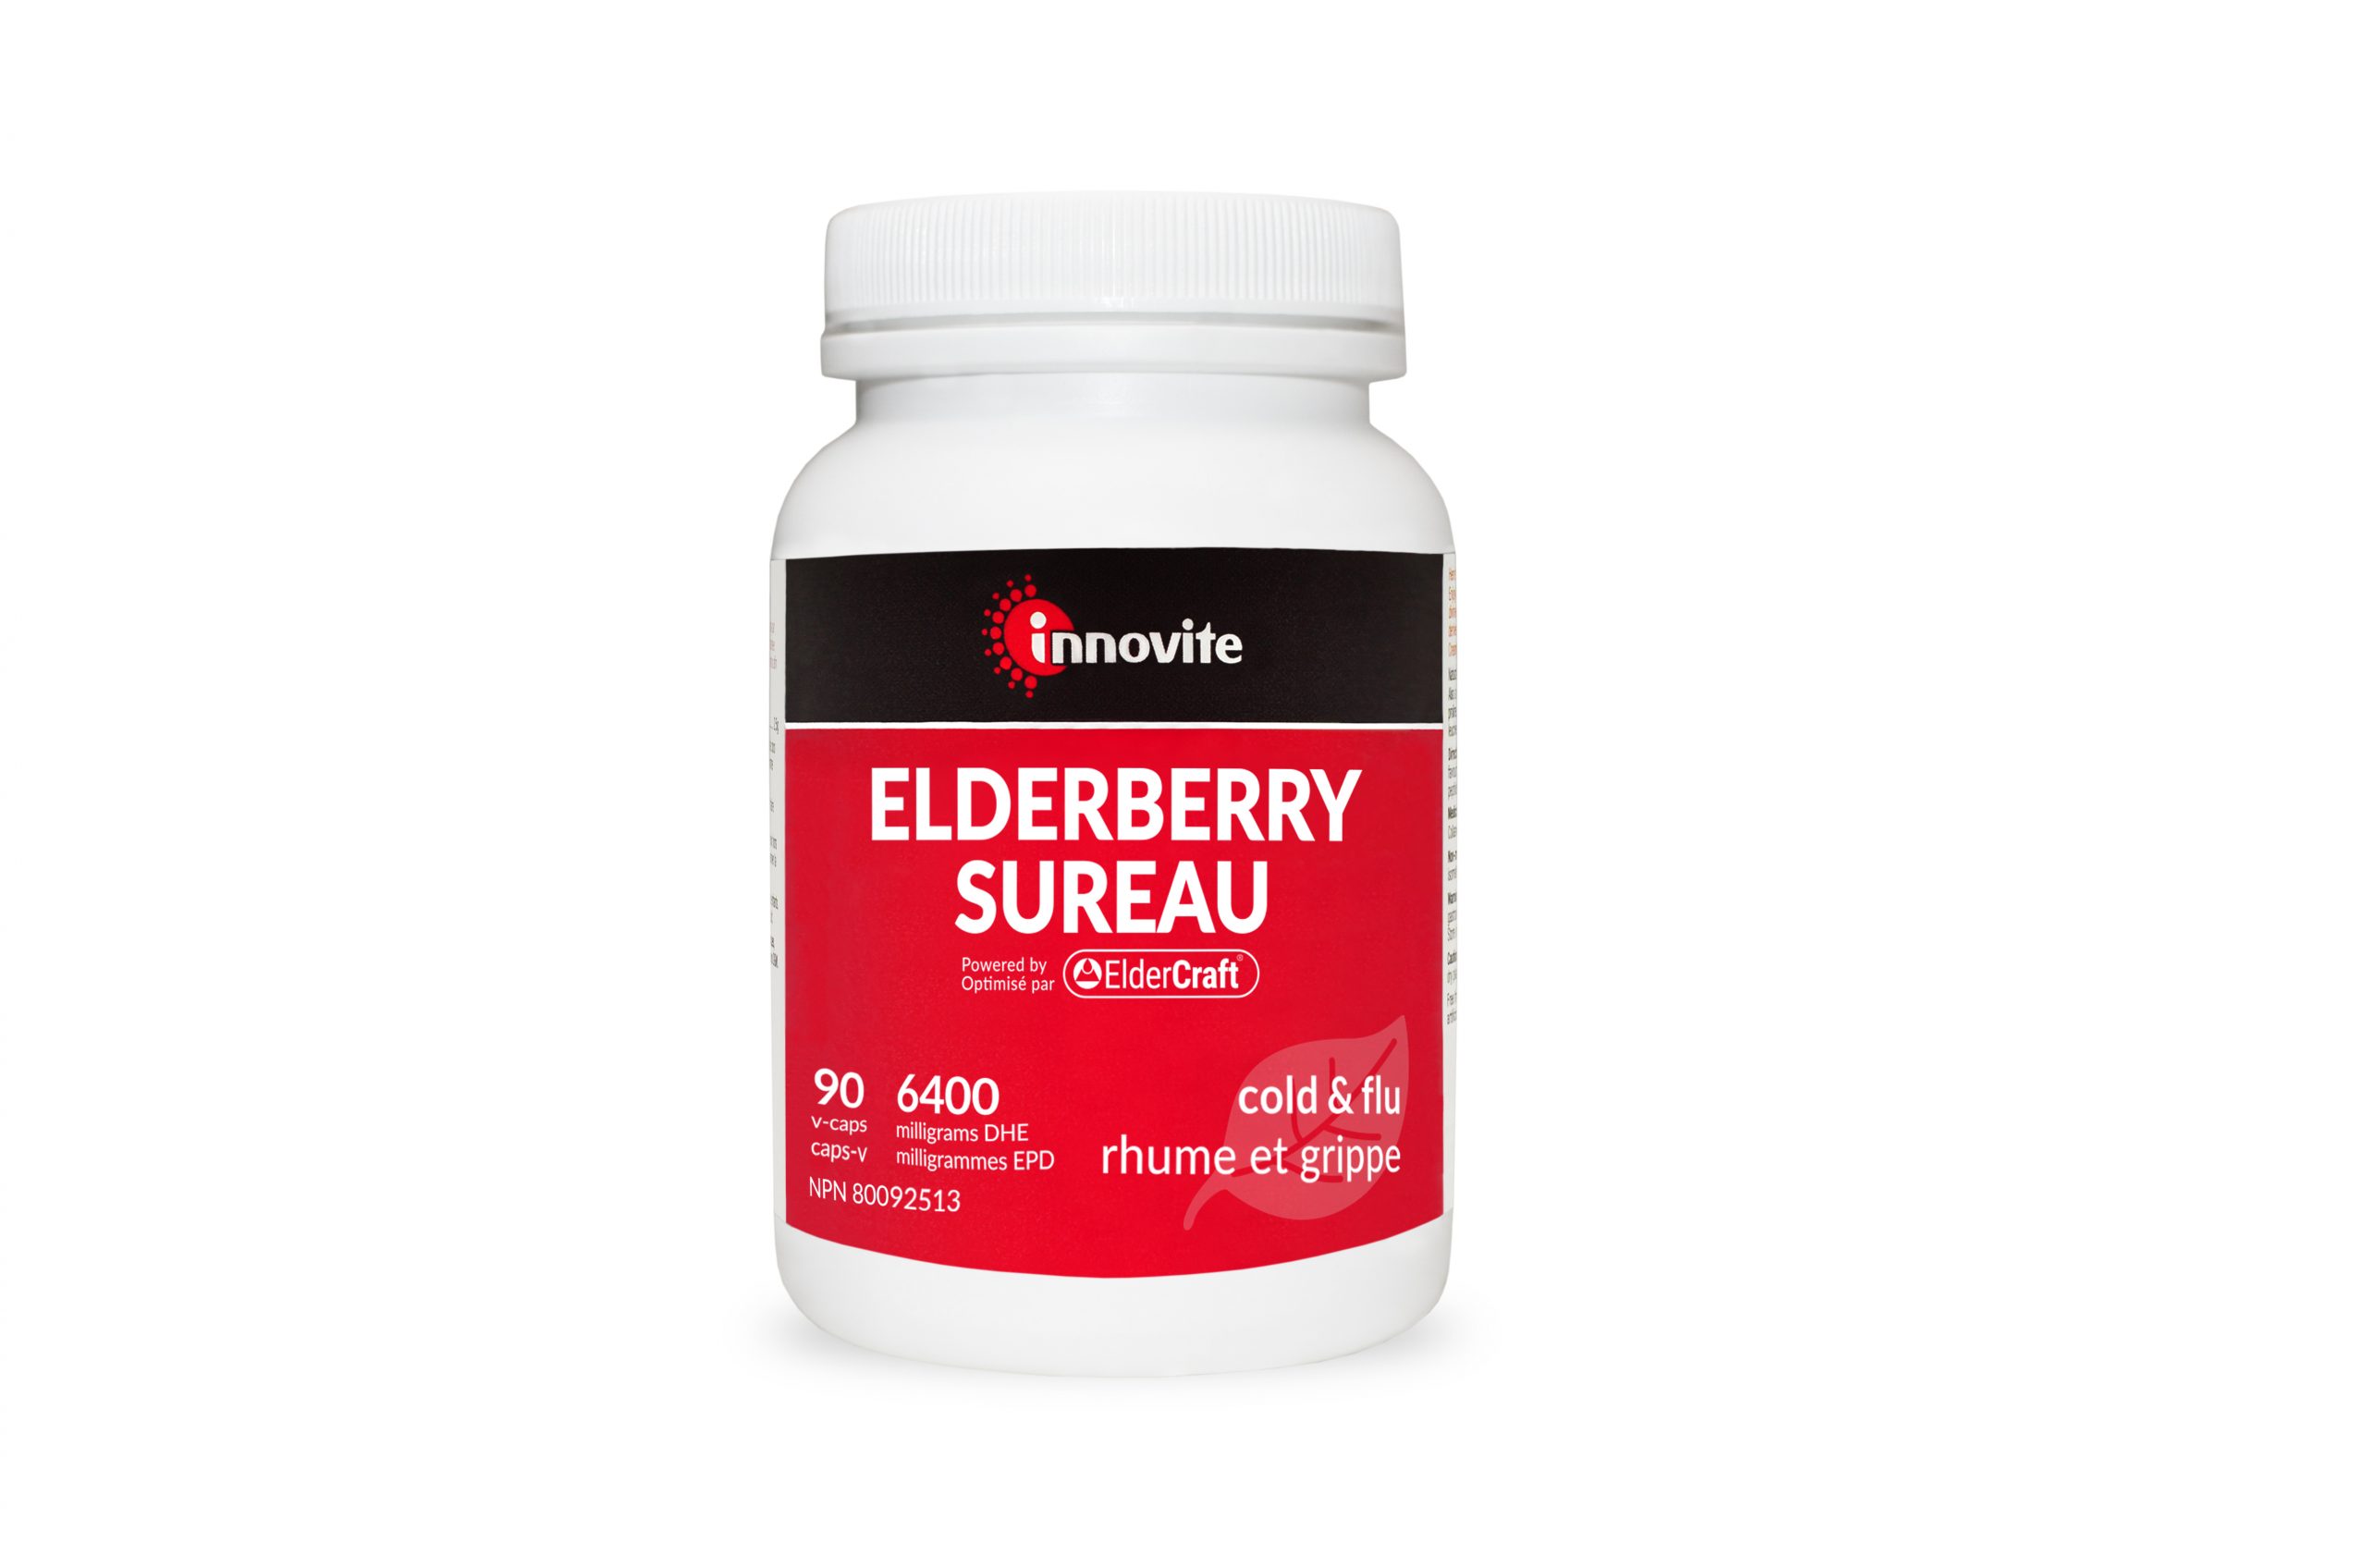 Innovite Elderberry supplement